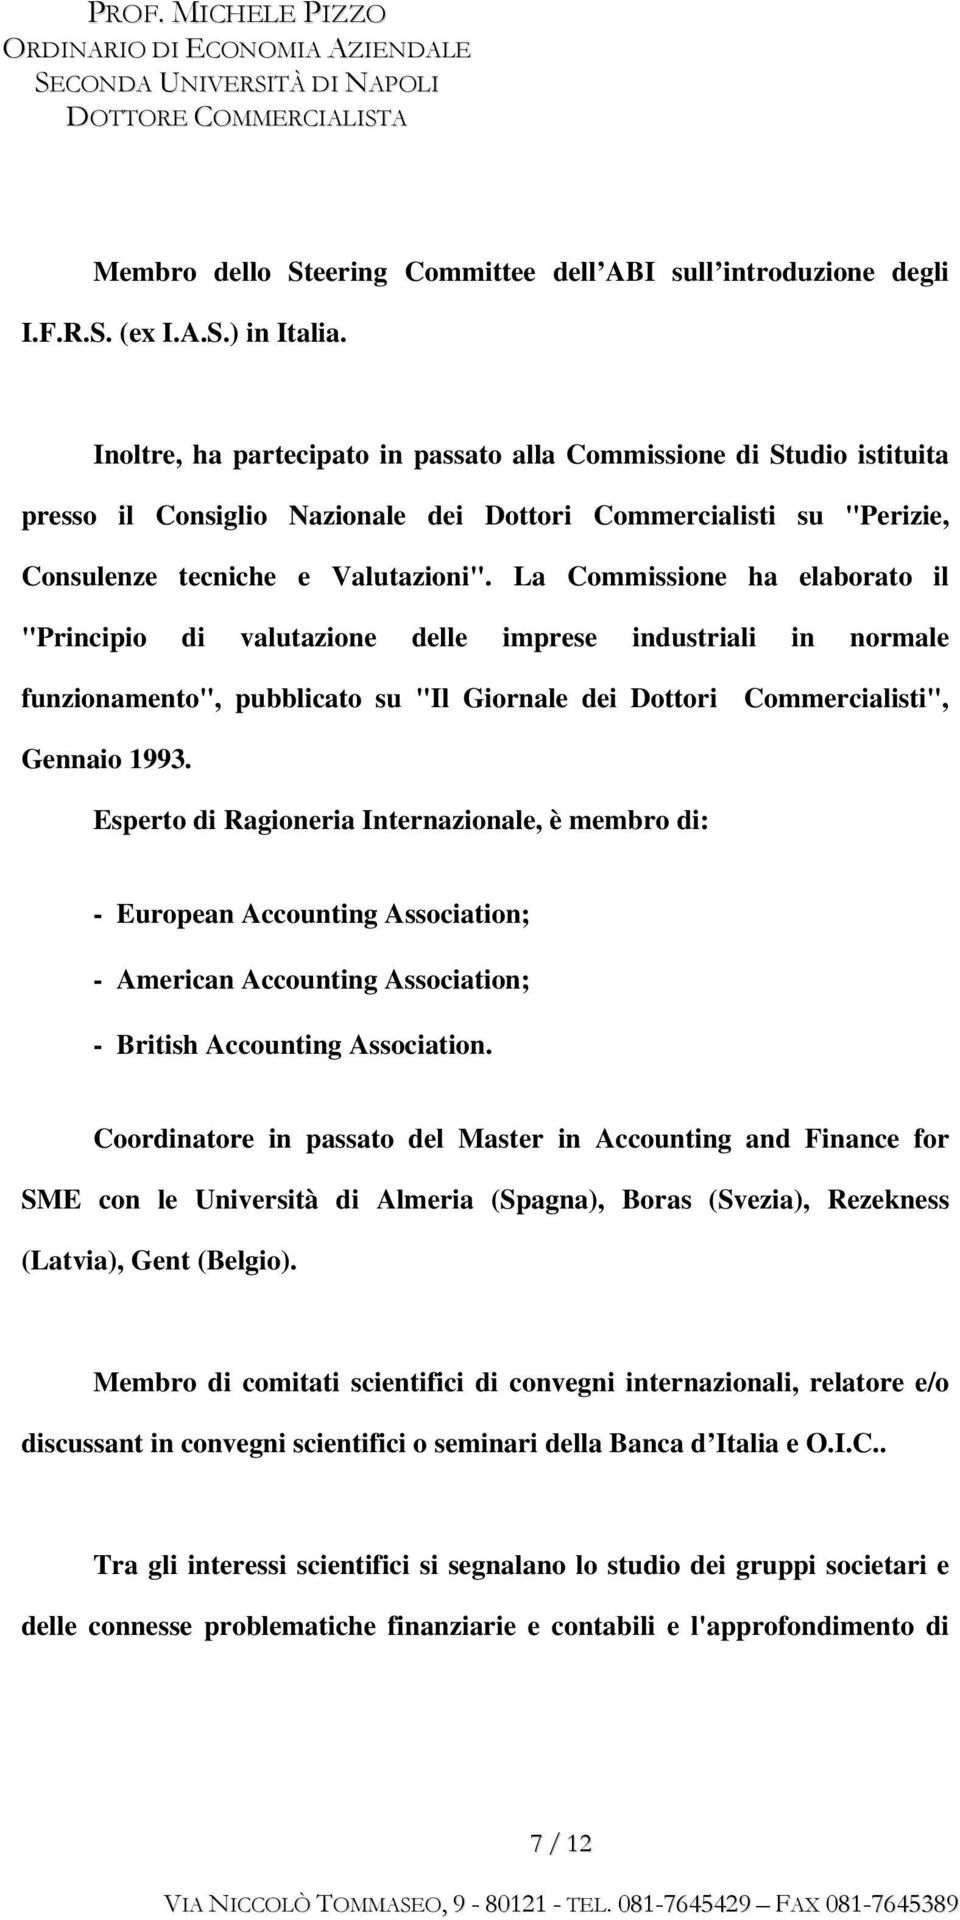 La Commissione ha elaborato il "Principio di valutazione delle imprese industriali in normale funzionamento", pubblicato su "Il Giornale dei Dottori Commercialisti", Gennaio 1993.